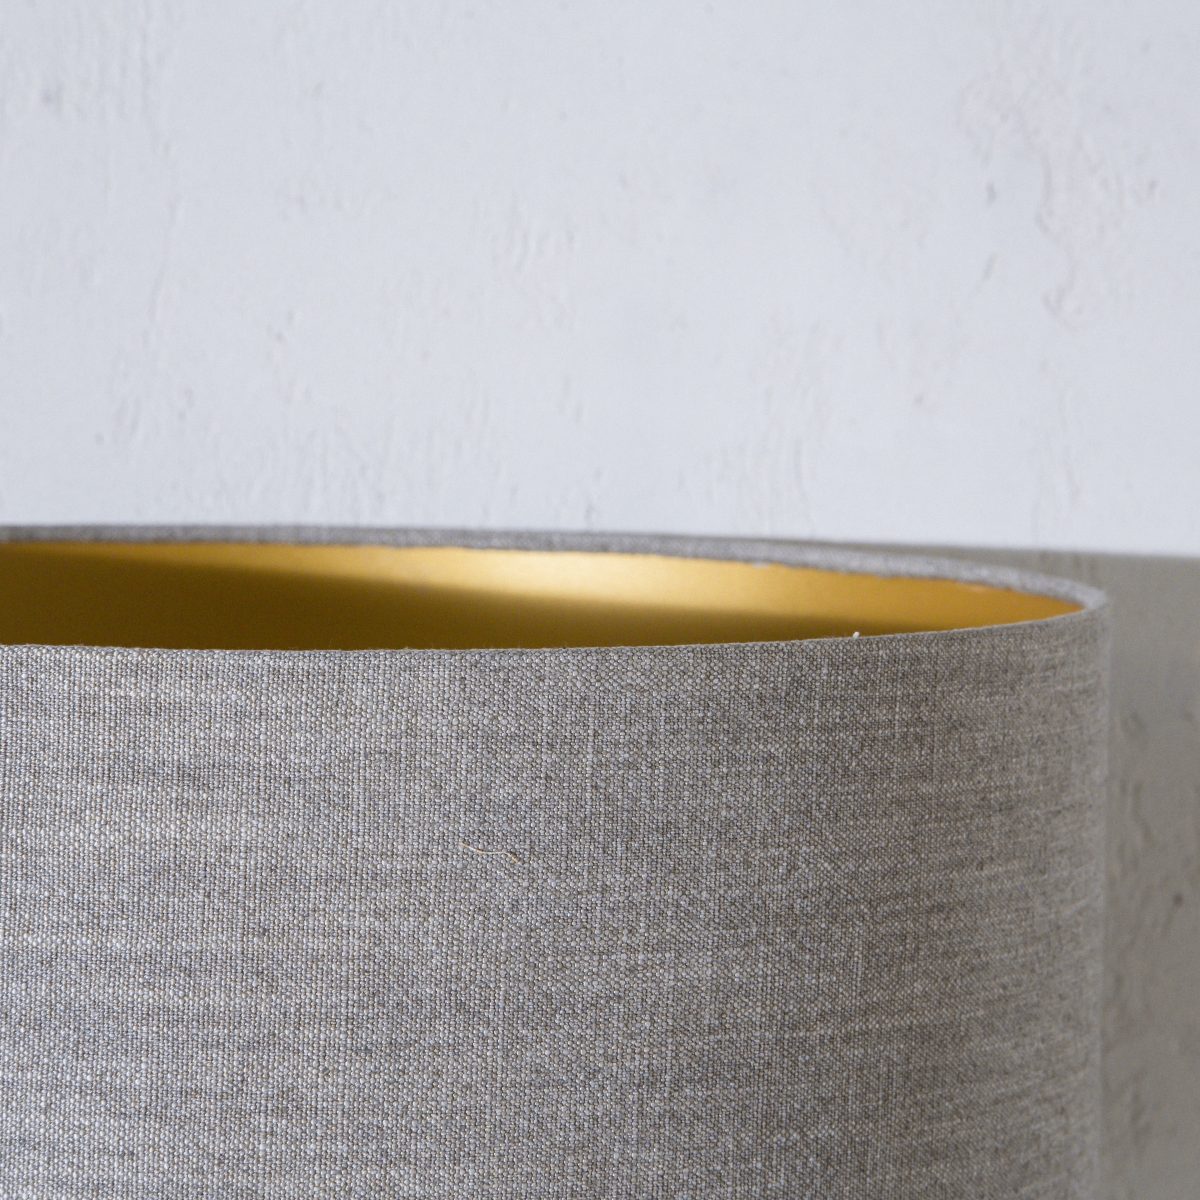 Pantalla de tela de lino color tierra con interior oro hecha de forma artesanal